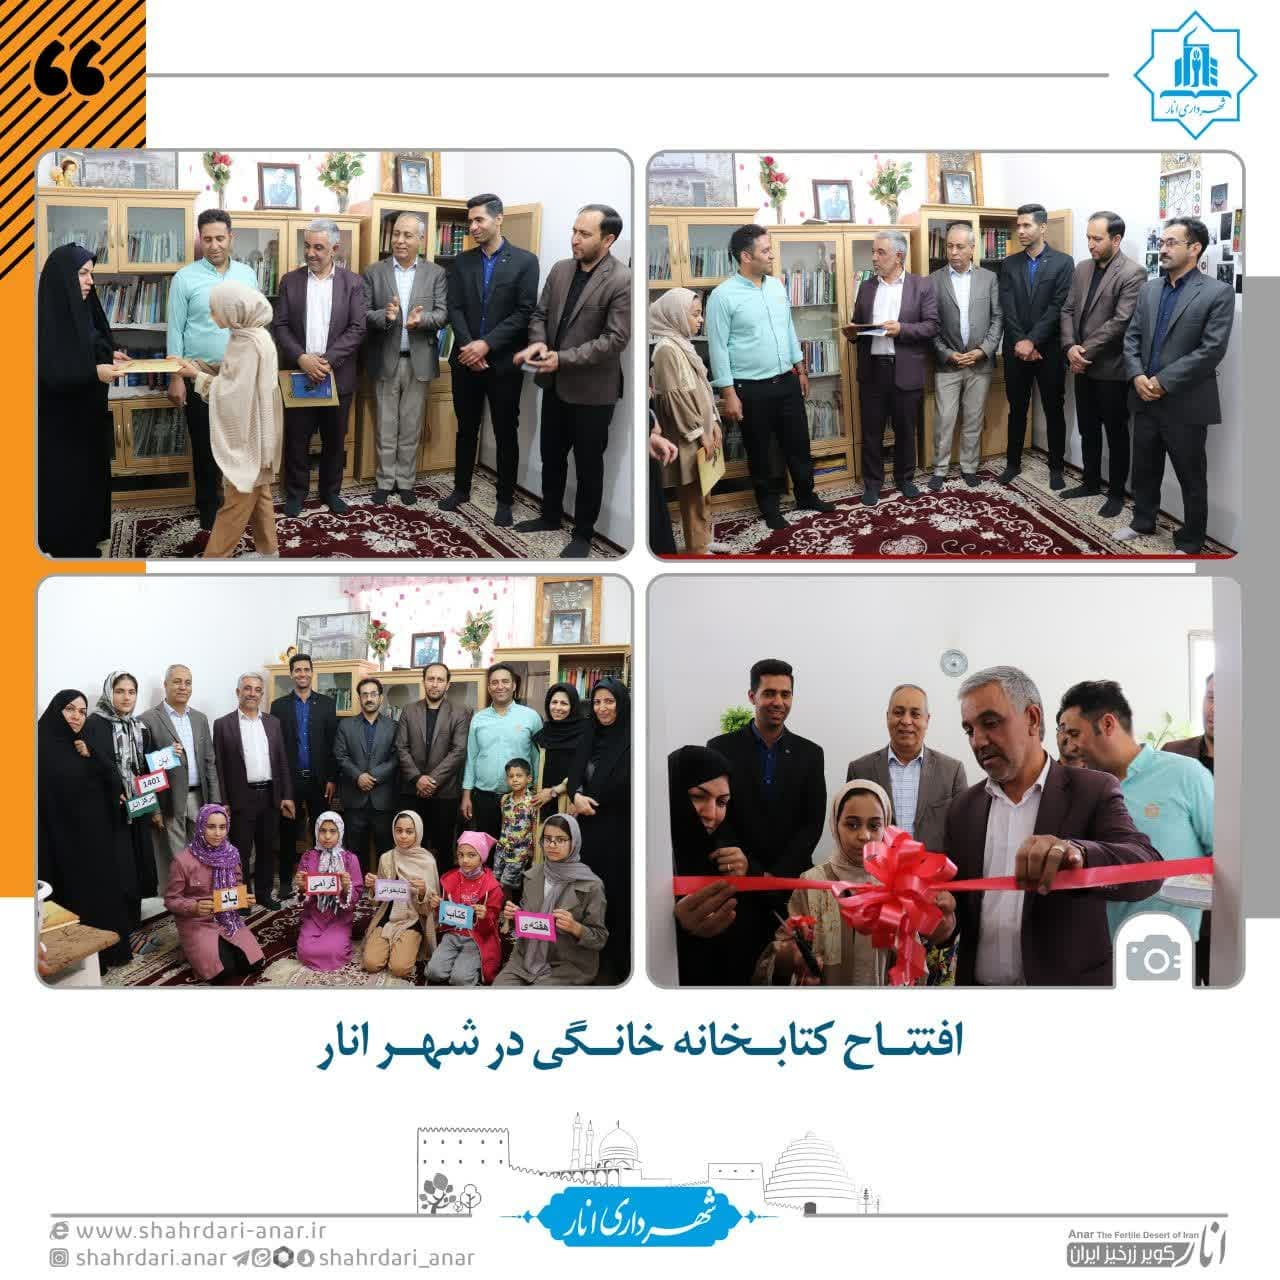 افتتاح کتابخانه خانگی در شهر انار